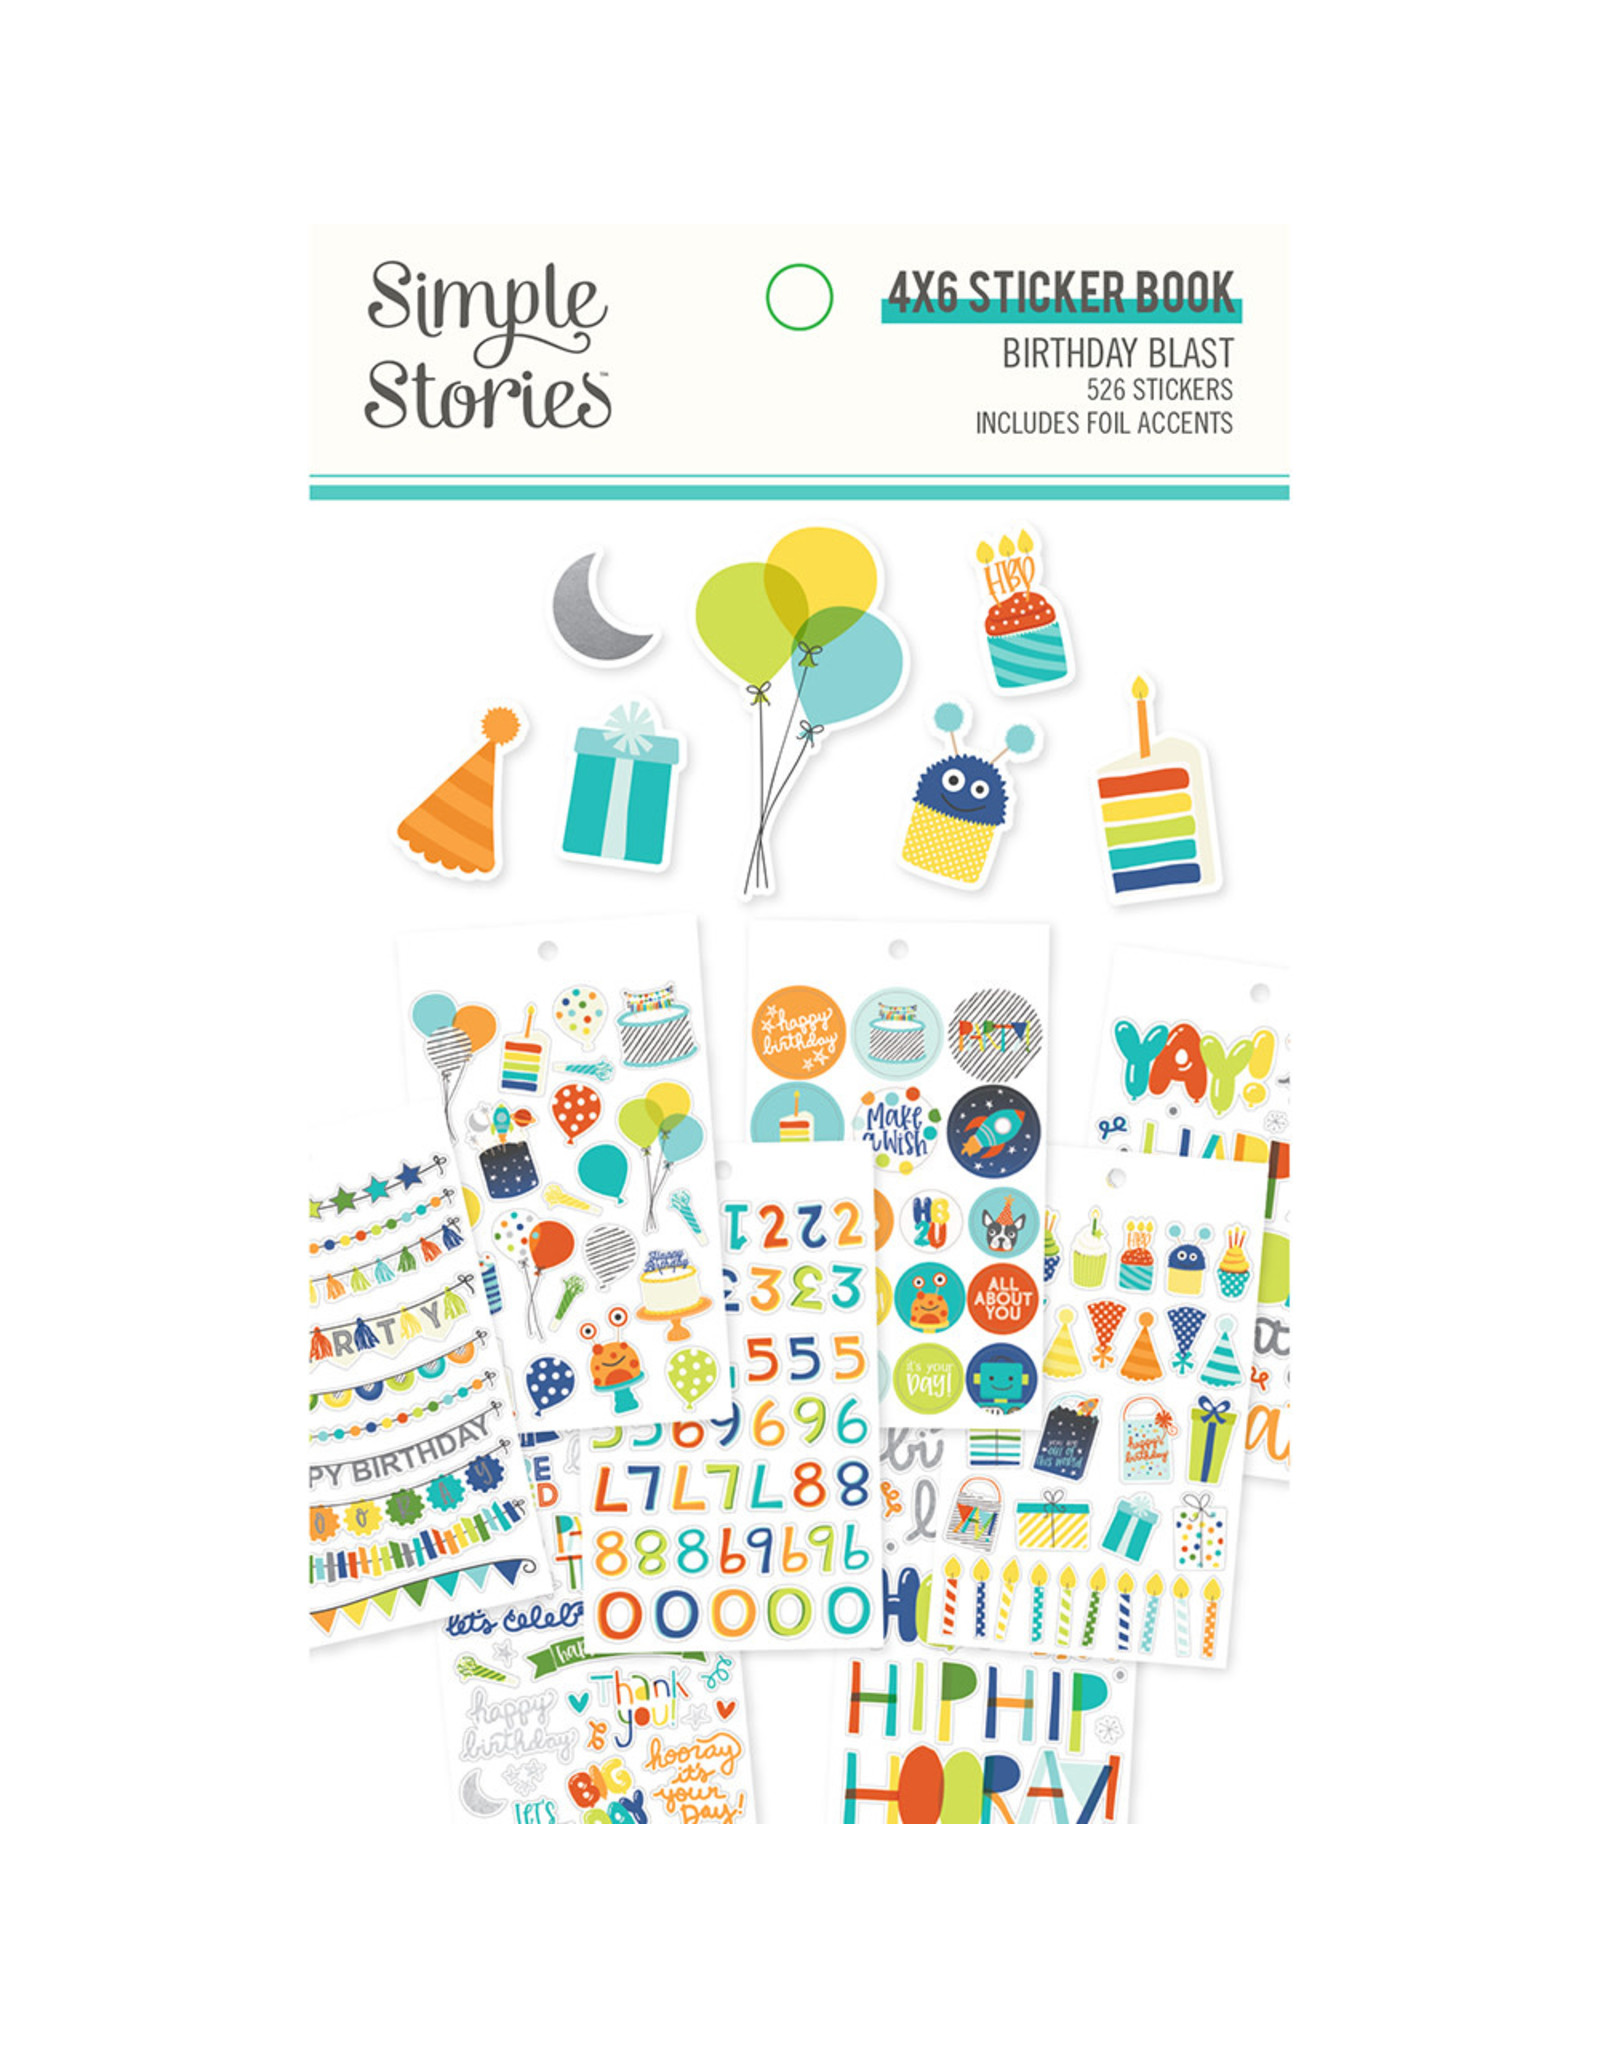 Simple Stories Birthday Blast 4x6 Sticker Book